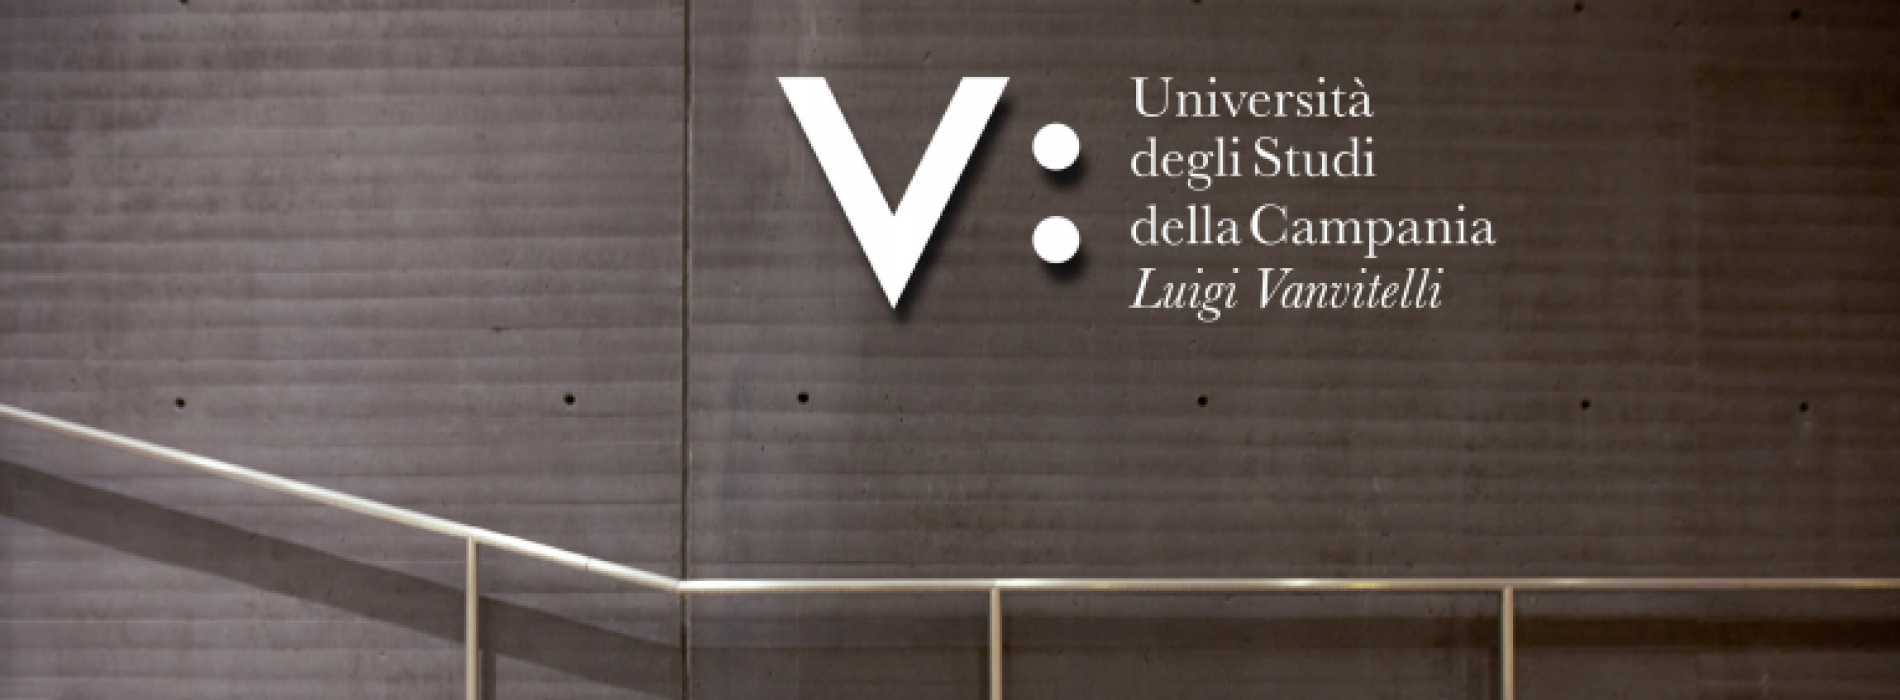 Università. Ecco il nuovo logo della Luigi Vanvitelli